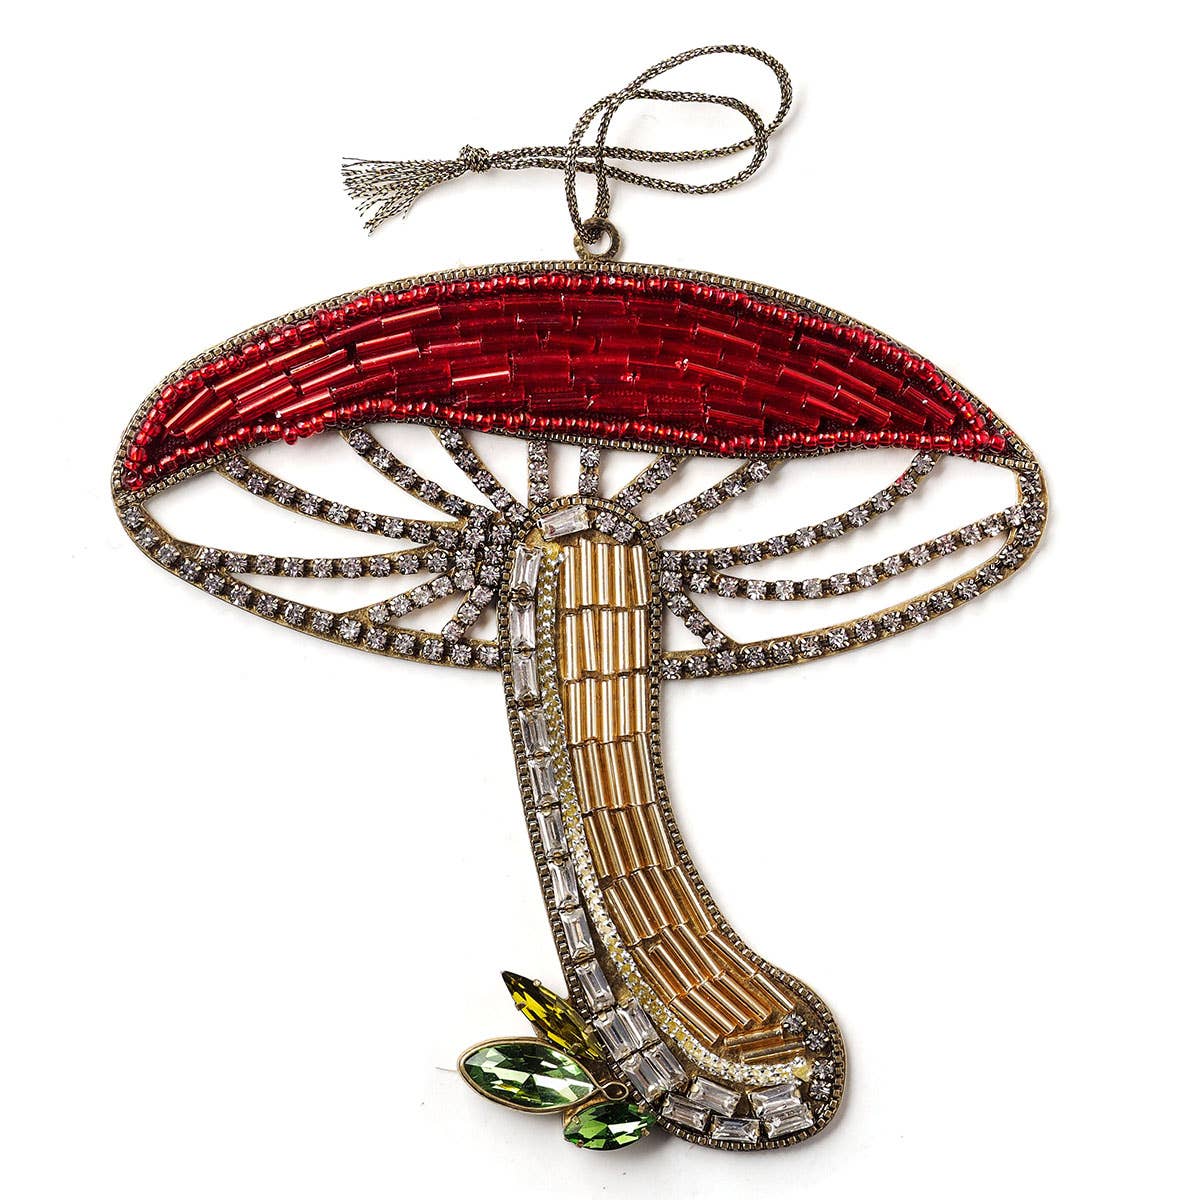 Mushroom Ornament by Jill Scwartz - Nocturne LLC